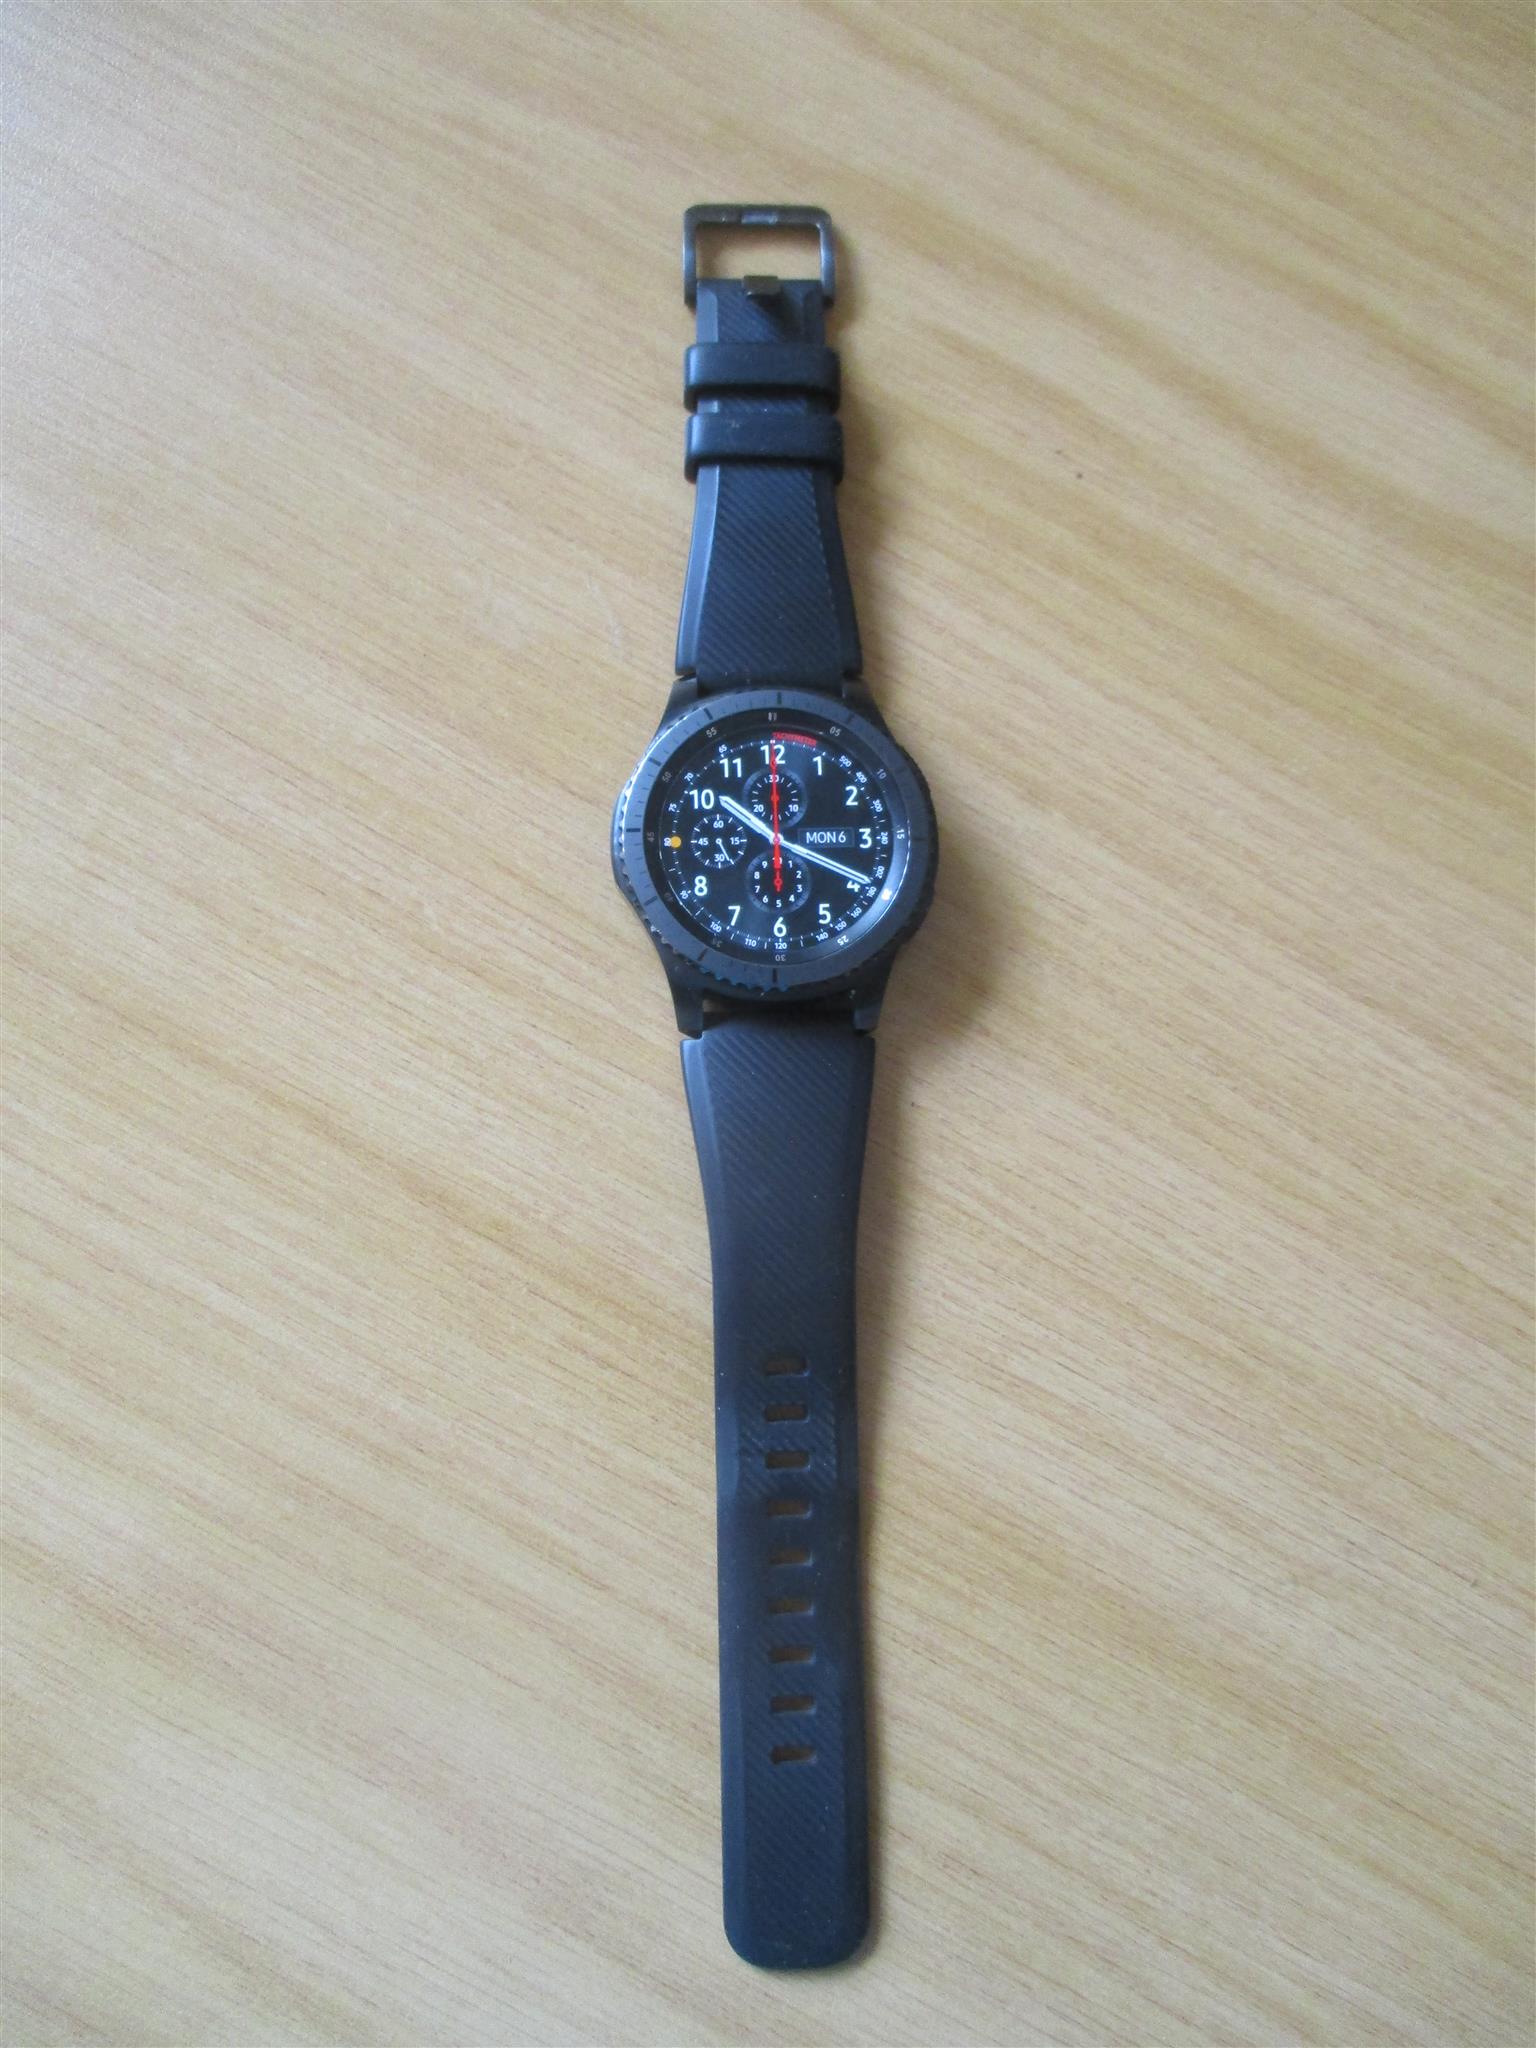 Samsung Frontier S3 Gear watch